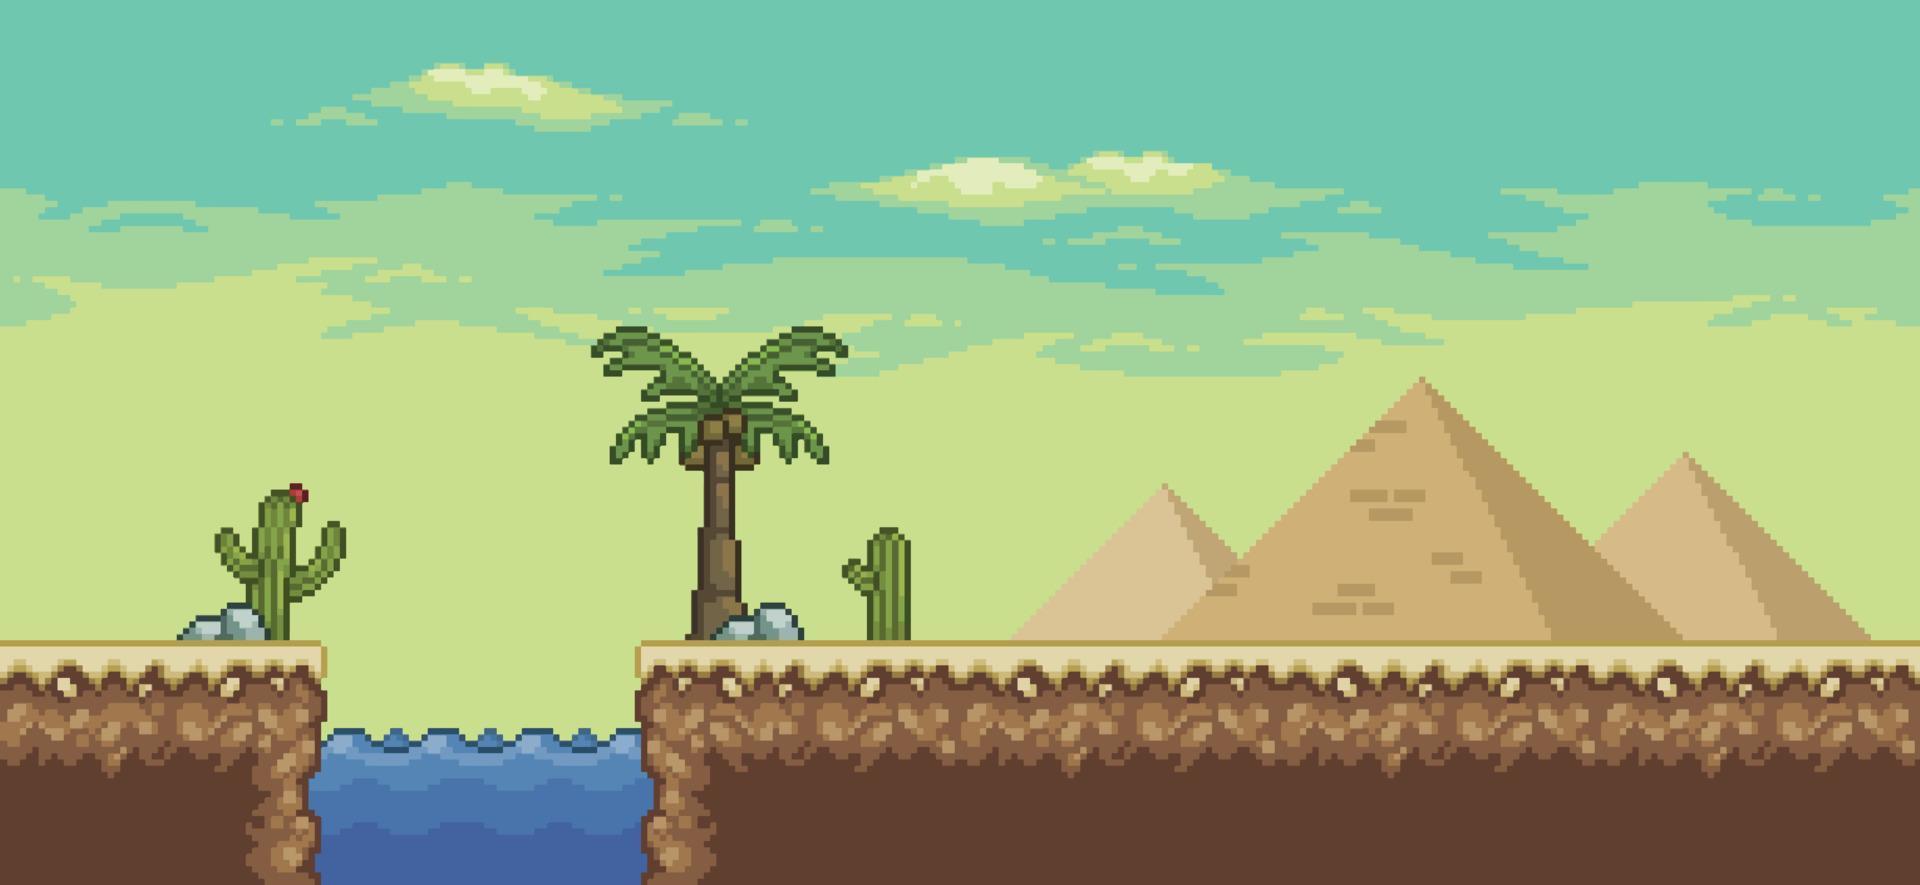 cena do jogo do deserto de pixel art com pirâmide, palmeira, oásis, cactos 8bit paisagem de fundo vetor